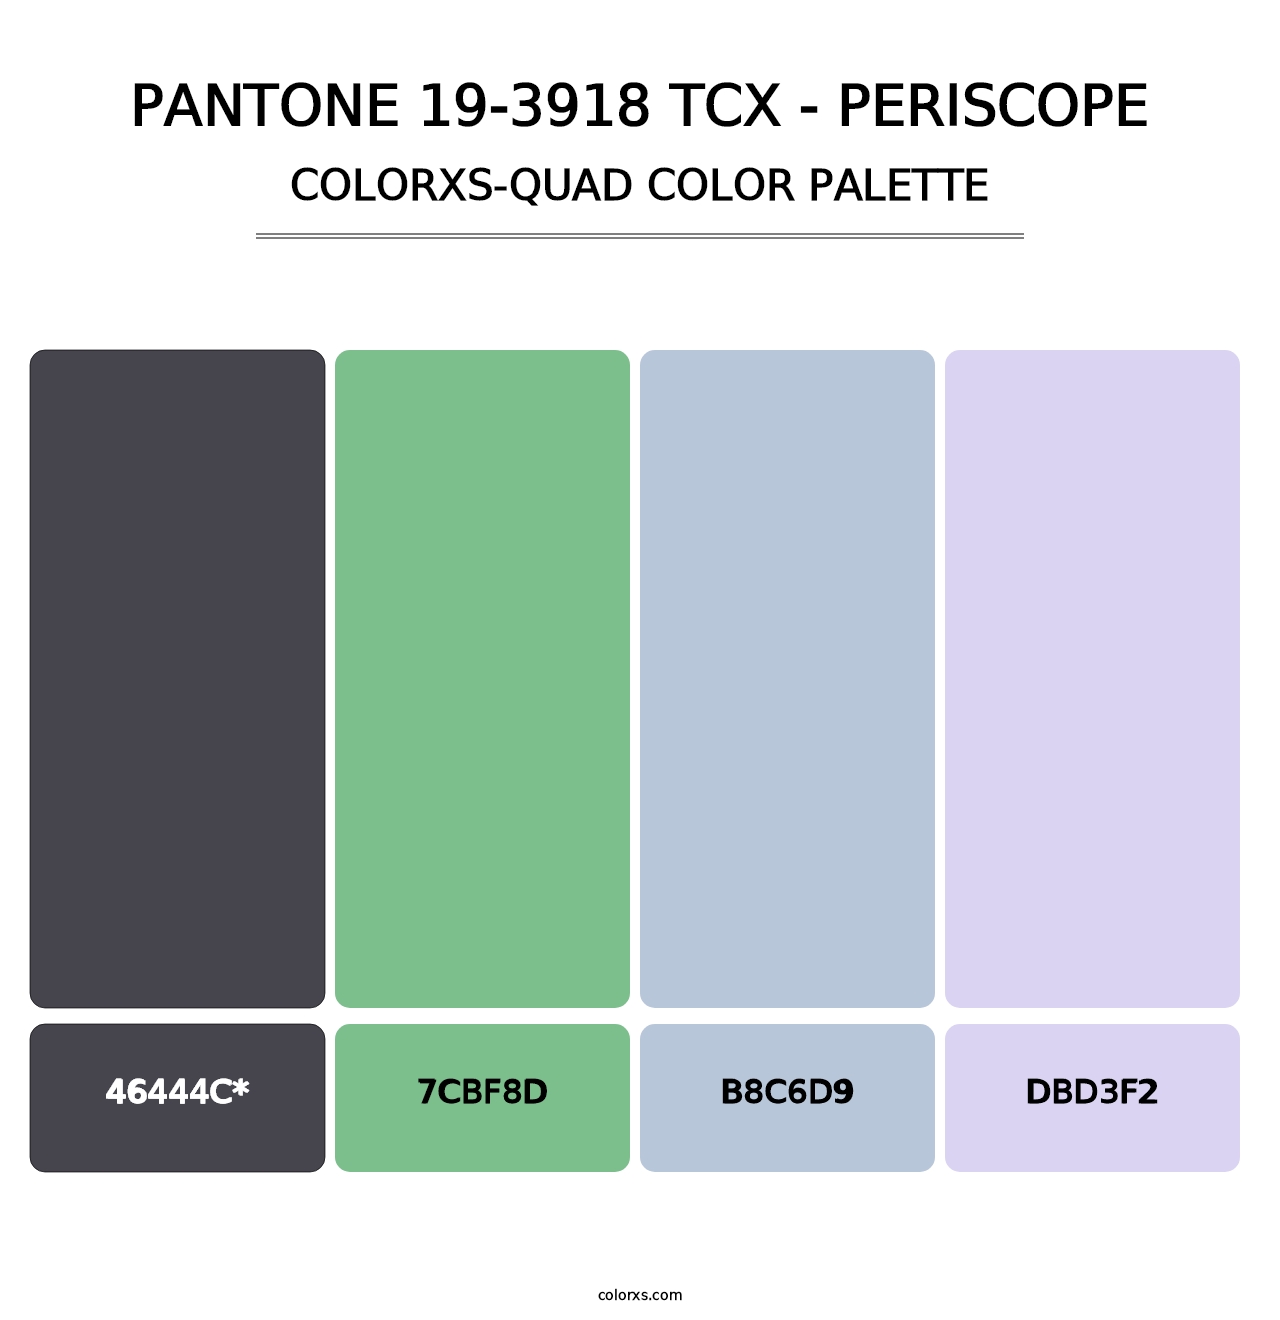 PANTONE 19-3918 TCX - Periscope - Colorxs Quad Palette